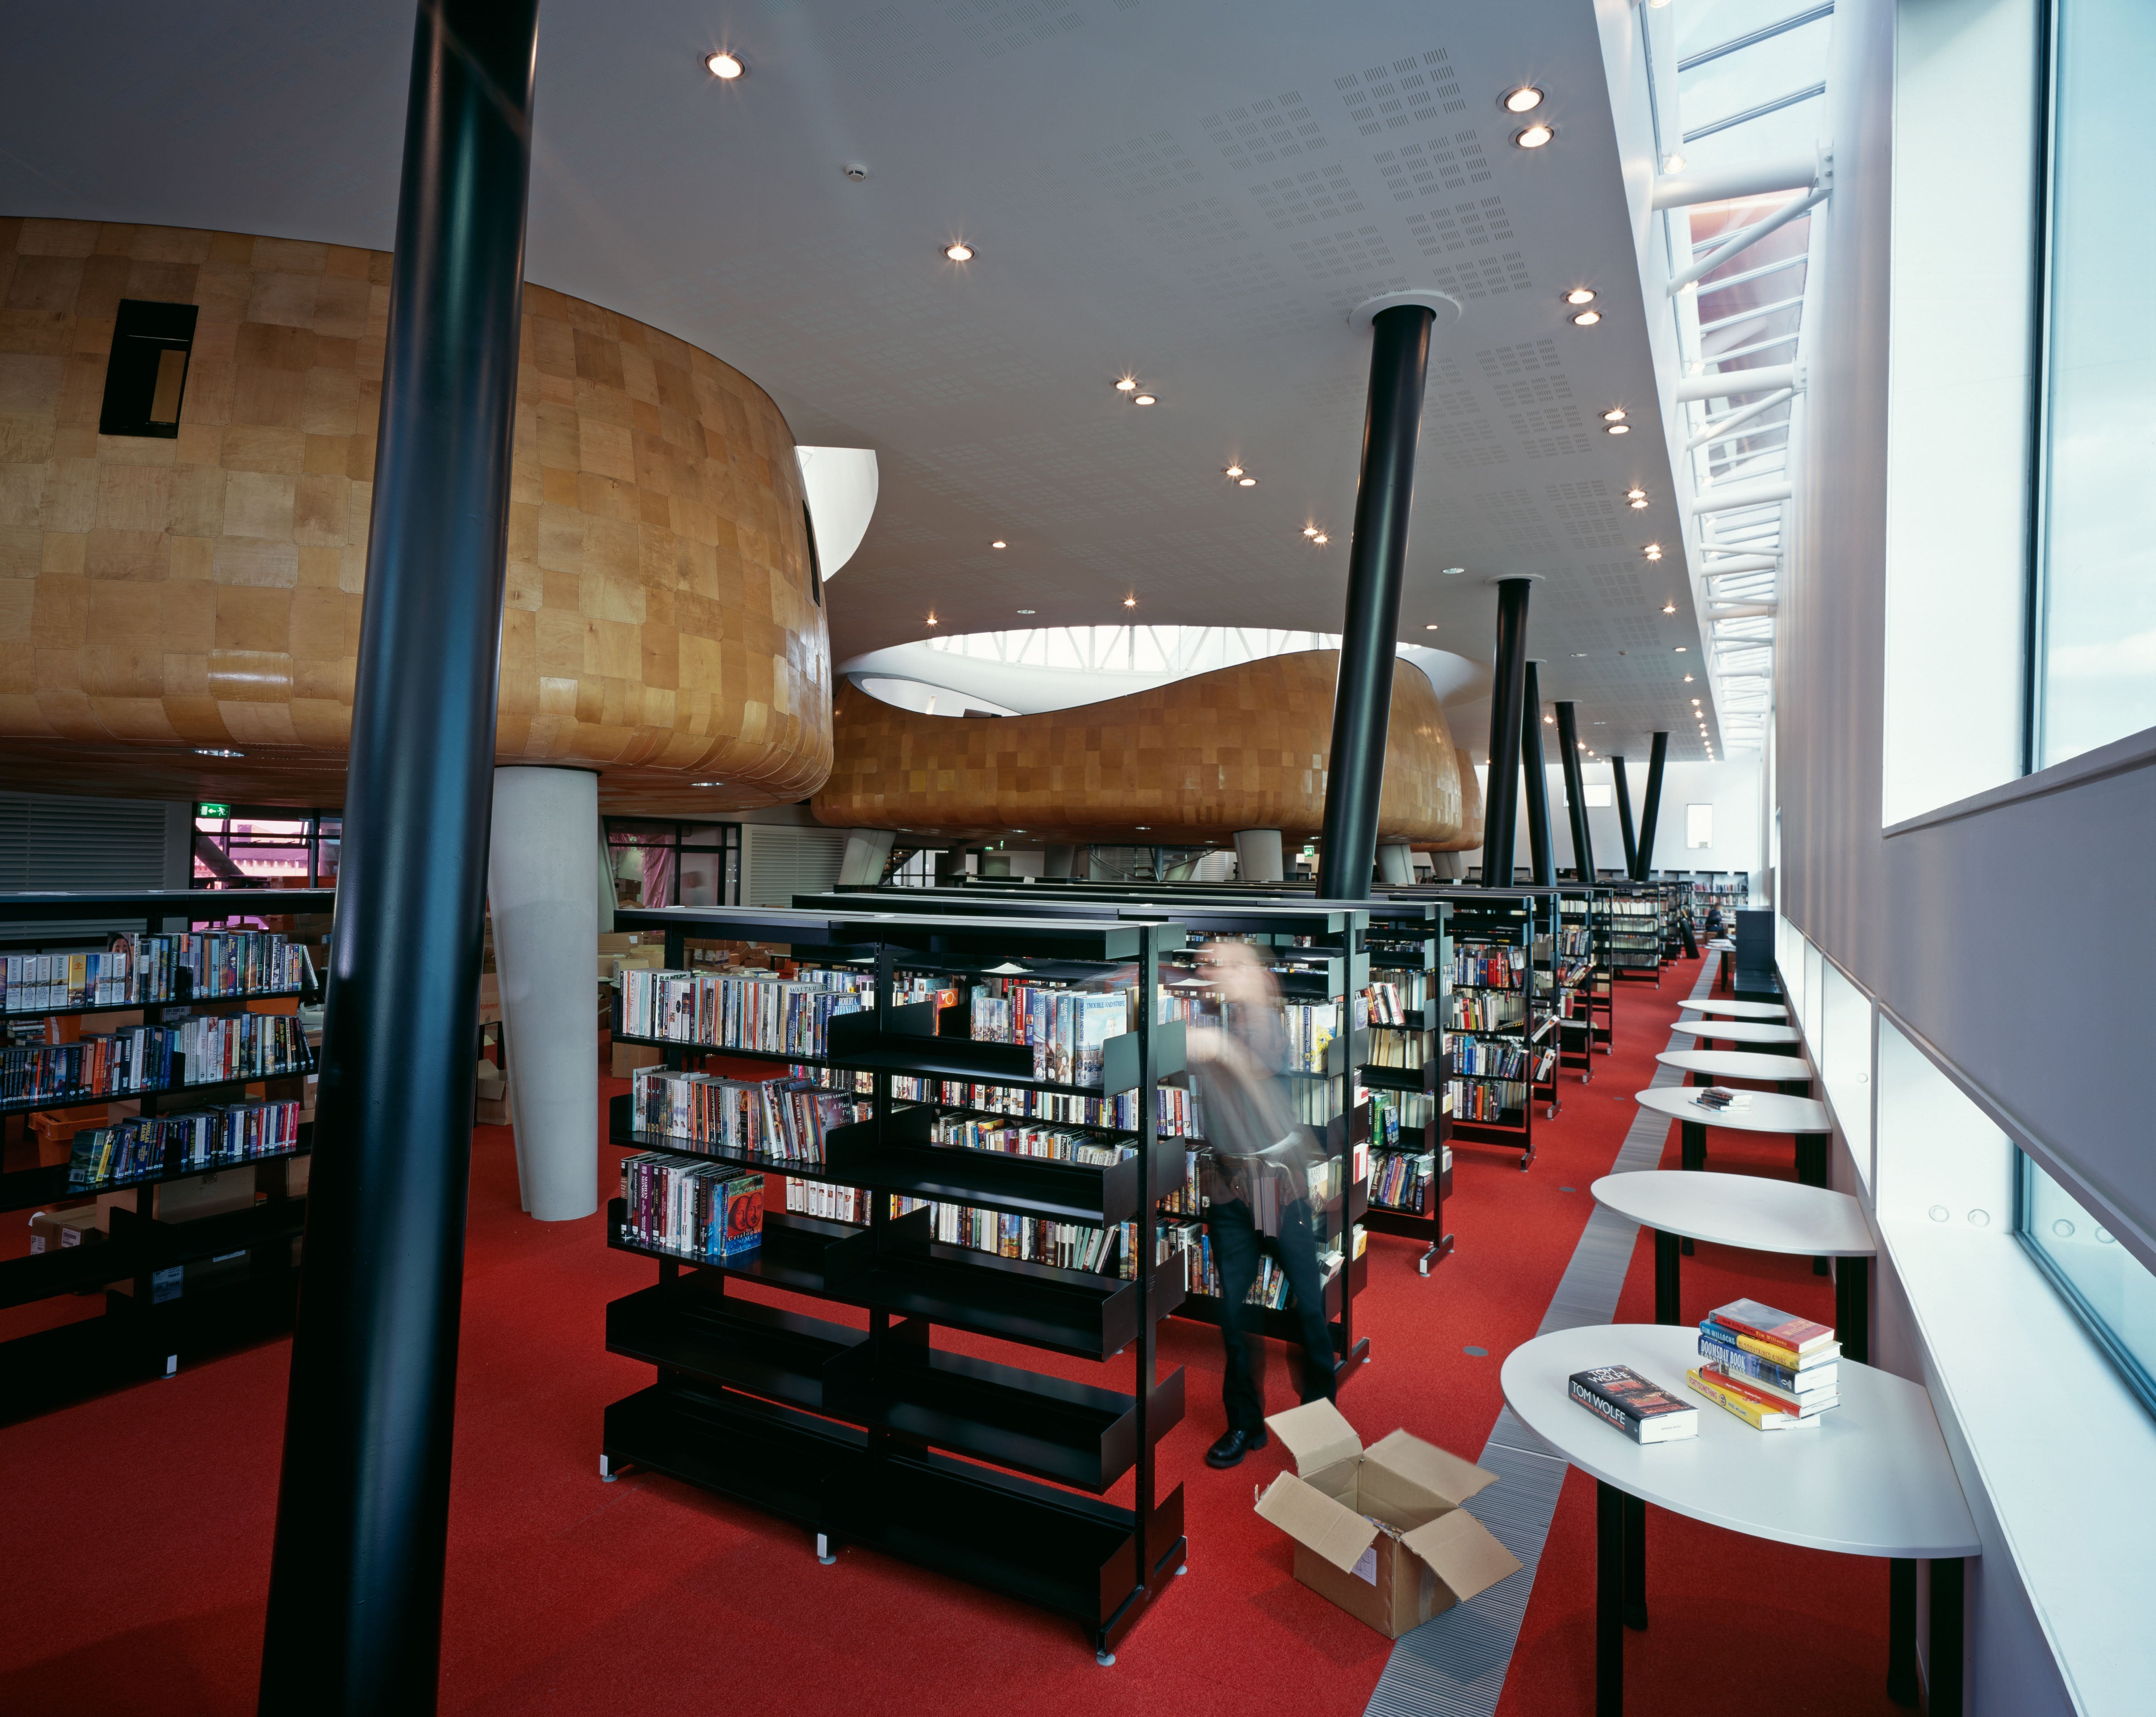 Inside Peckham Library